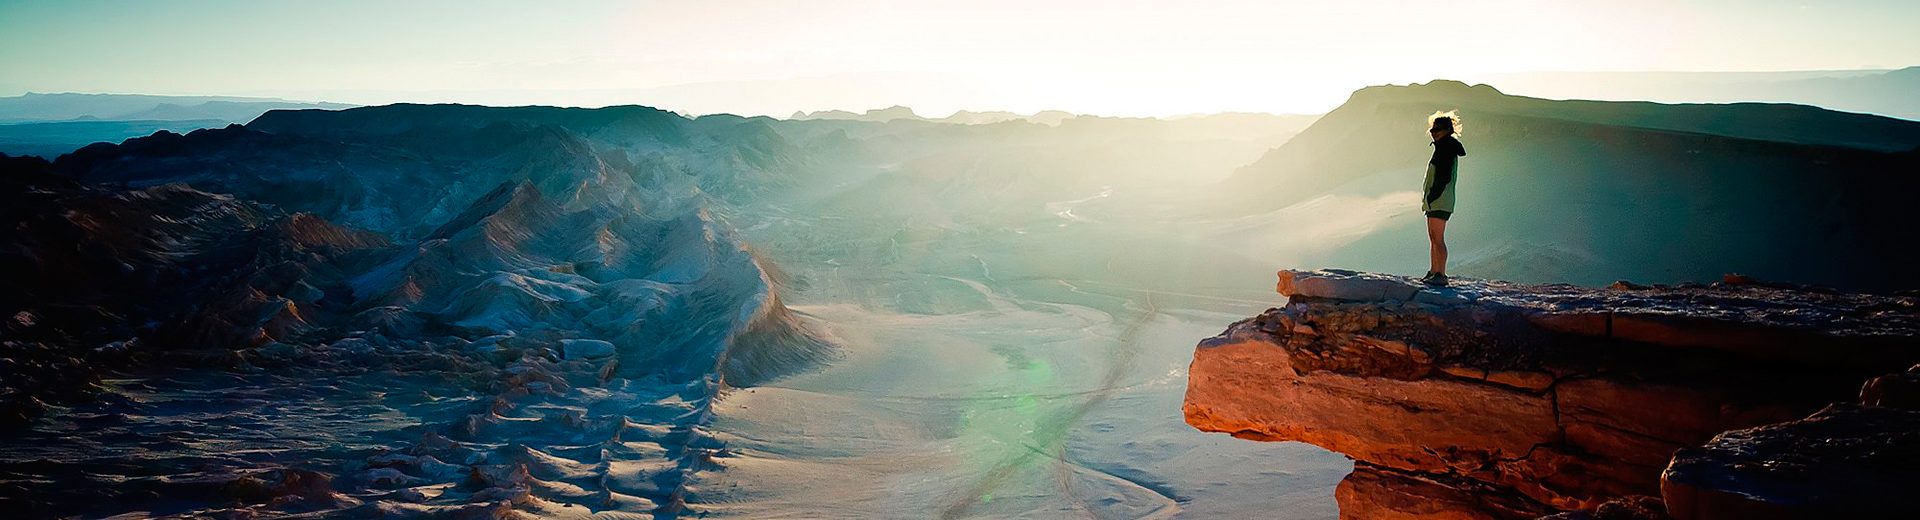 Deserto de Atacama: Um passeio no Chile que vale a pena